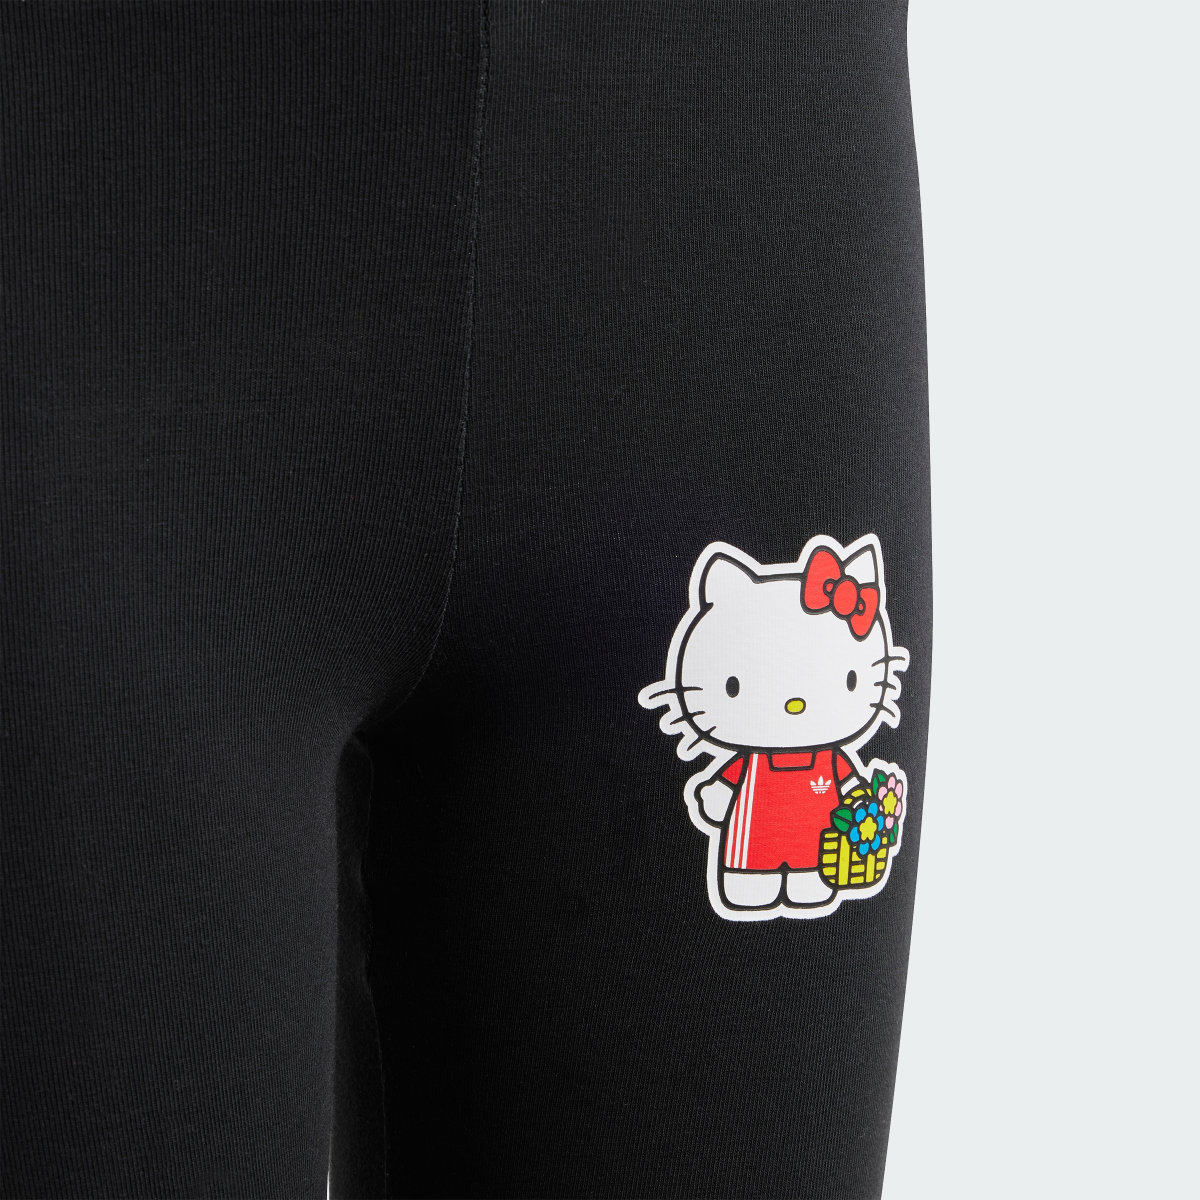 Adidas Conjunto de Vestido tipo Playera adidas Originals x Hello Kitty. 8